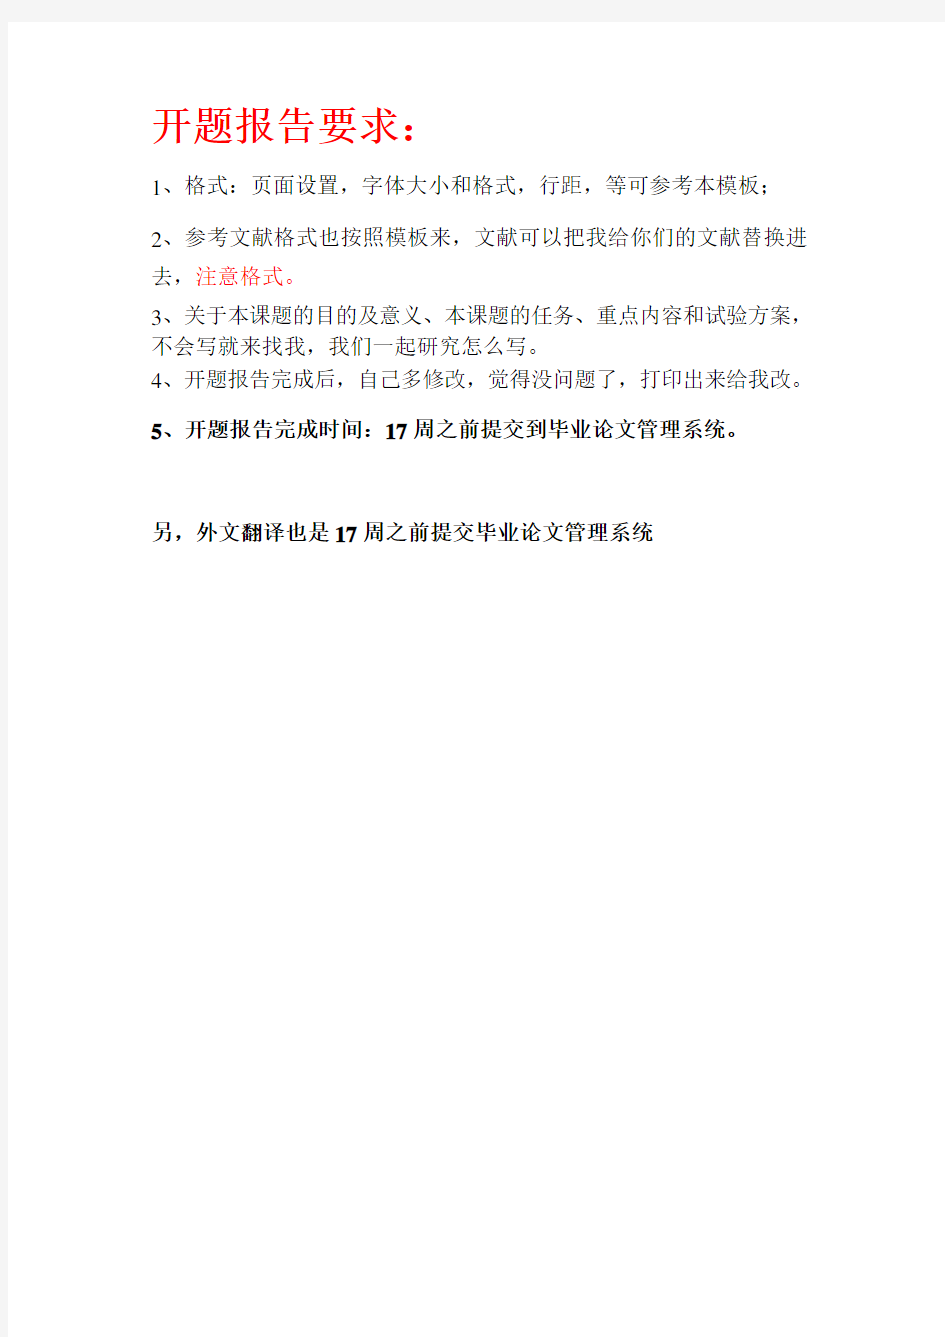 重庆科技学院毕业设计开题报告模板